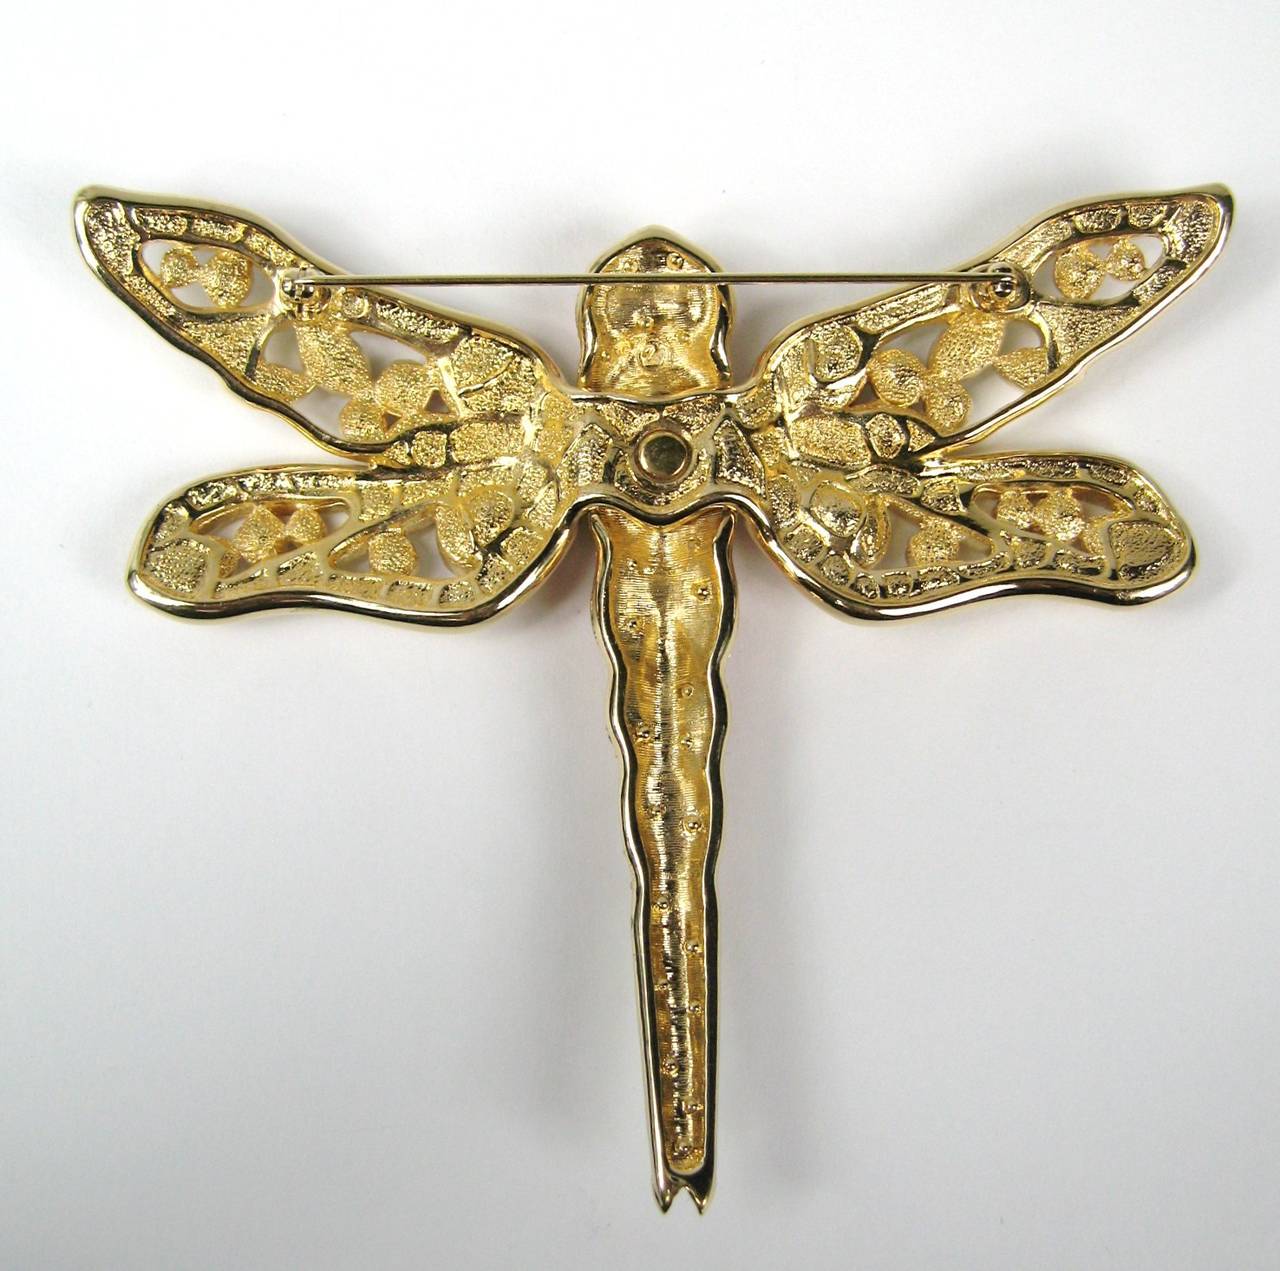 swarovski dragonfly brooch in collectible swarovski decorative jewelry